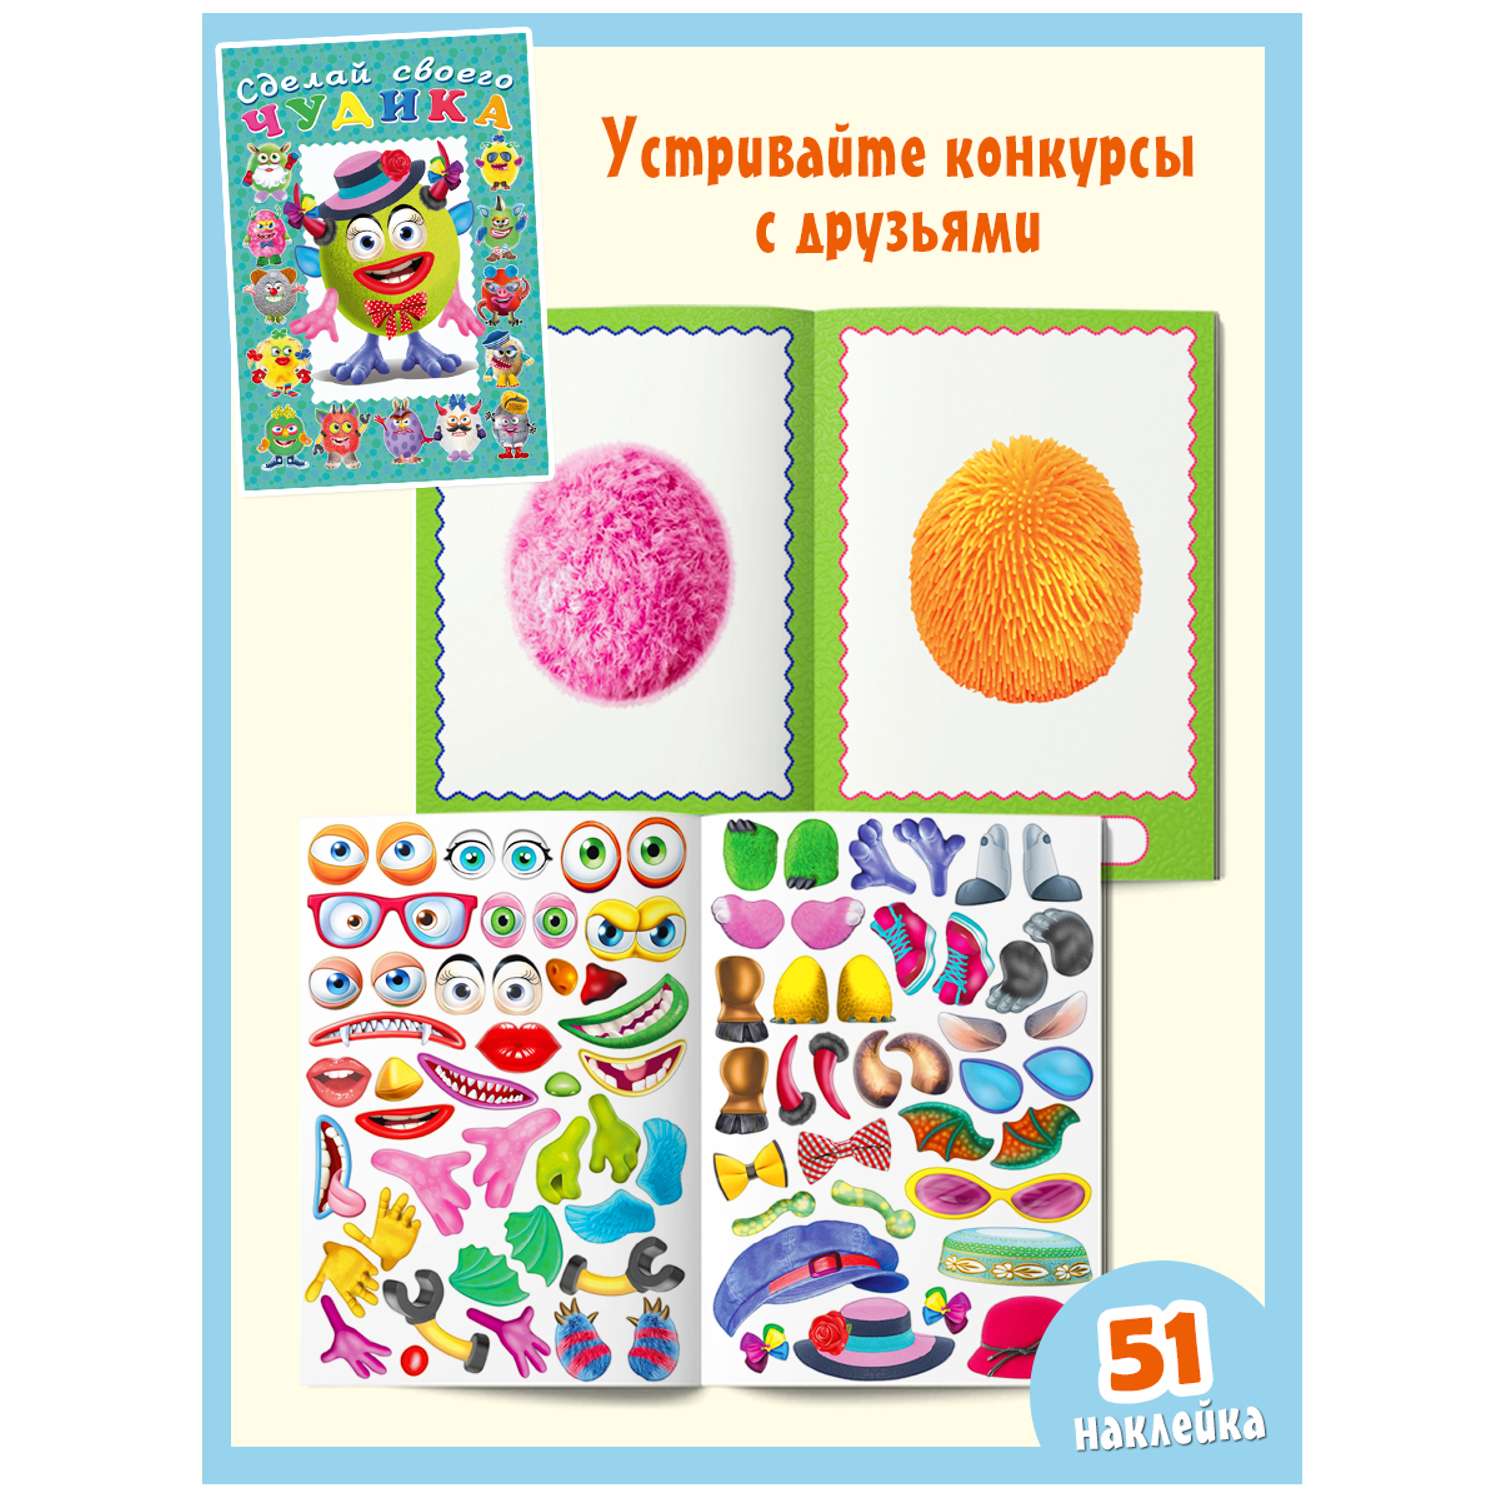 Комплект книг с наклейками Фламинго Книги для детей развивающие Сделай своего чудика из наклеек Набор для творчества - фото 5